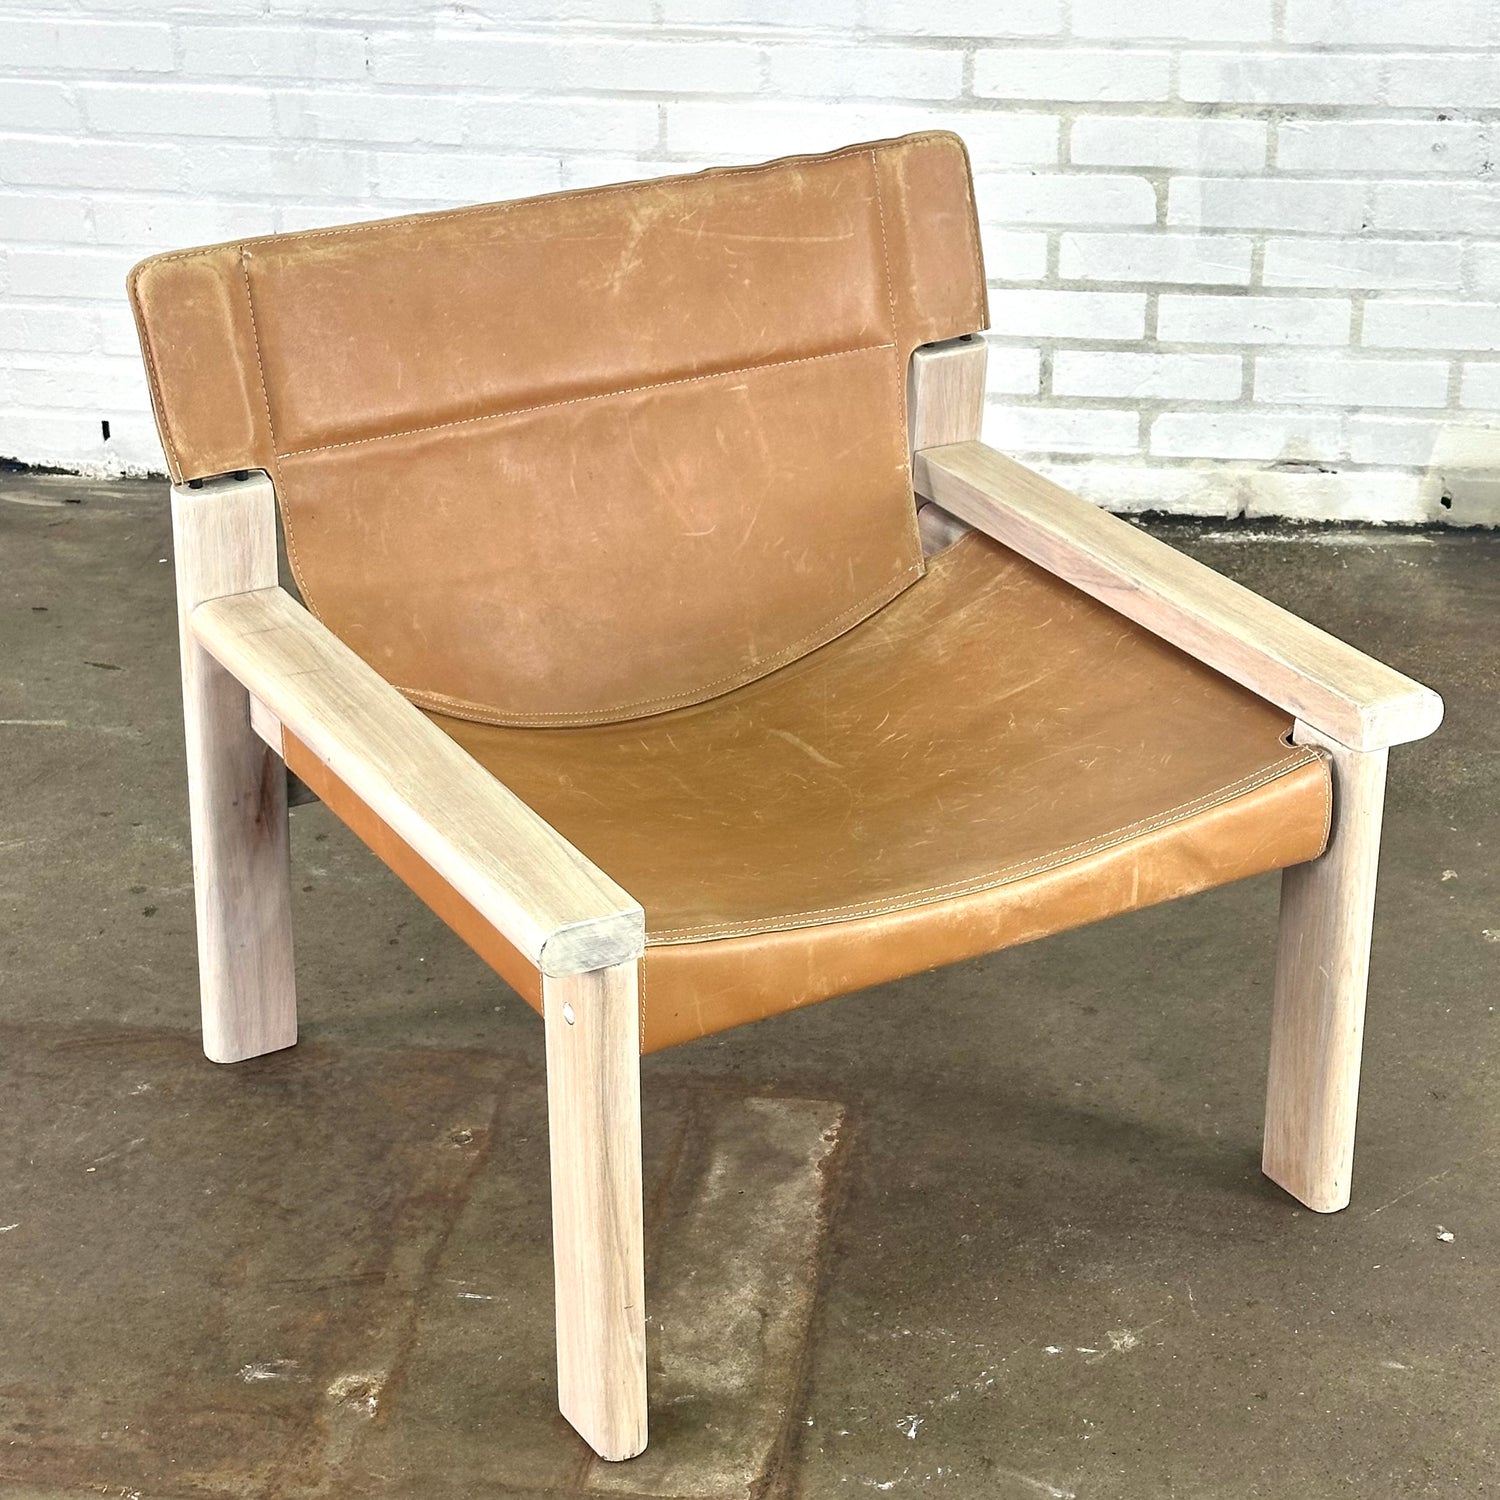 tuigleren-fauteuil-cognac-kleur-ikea-vintage